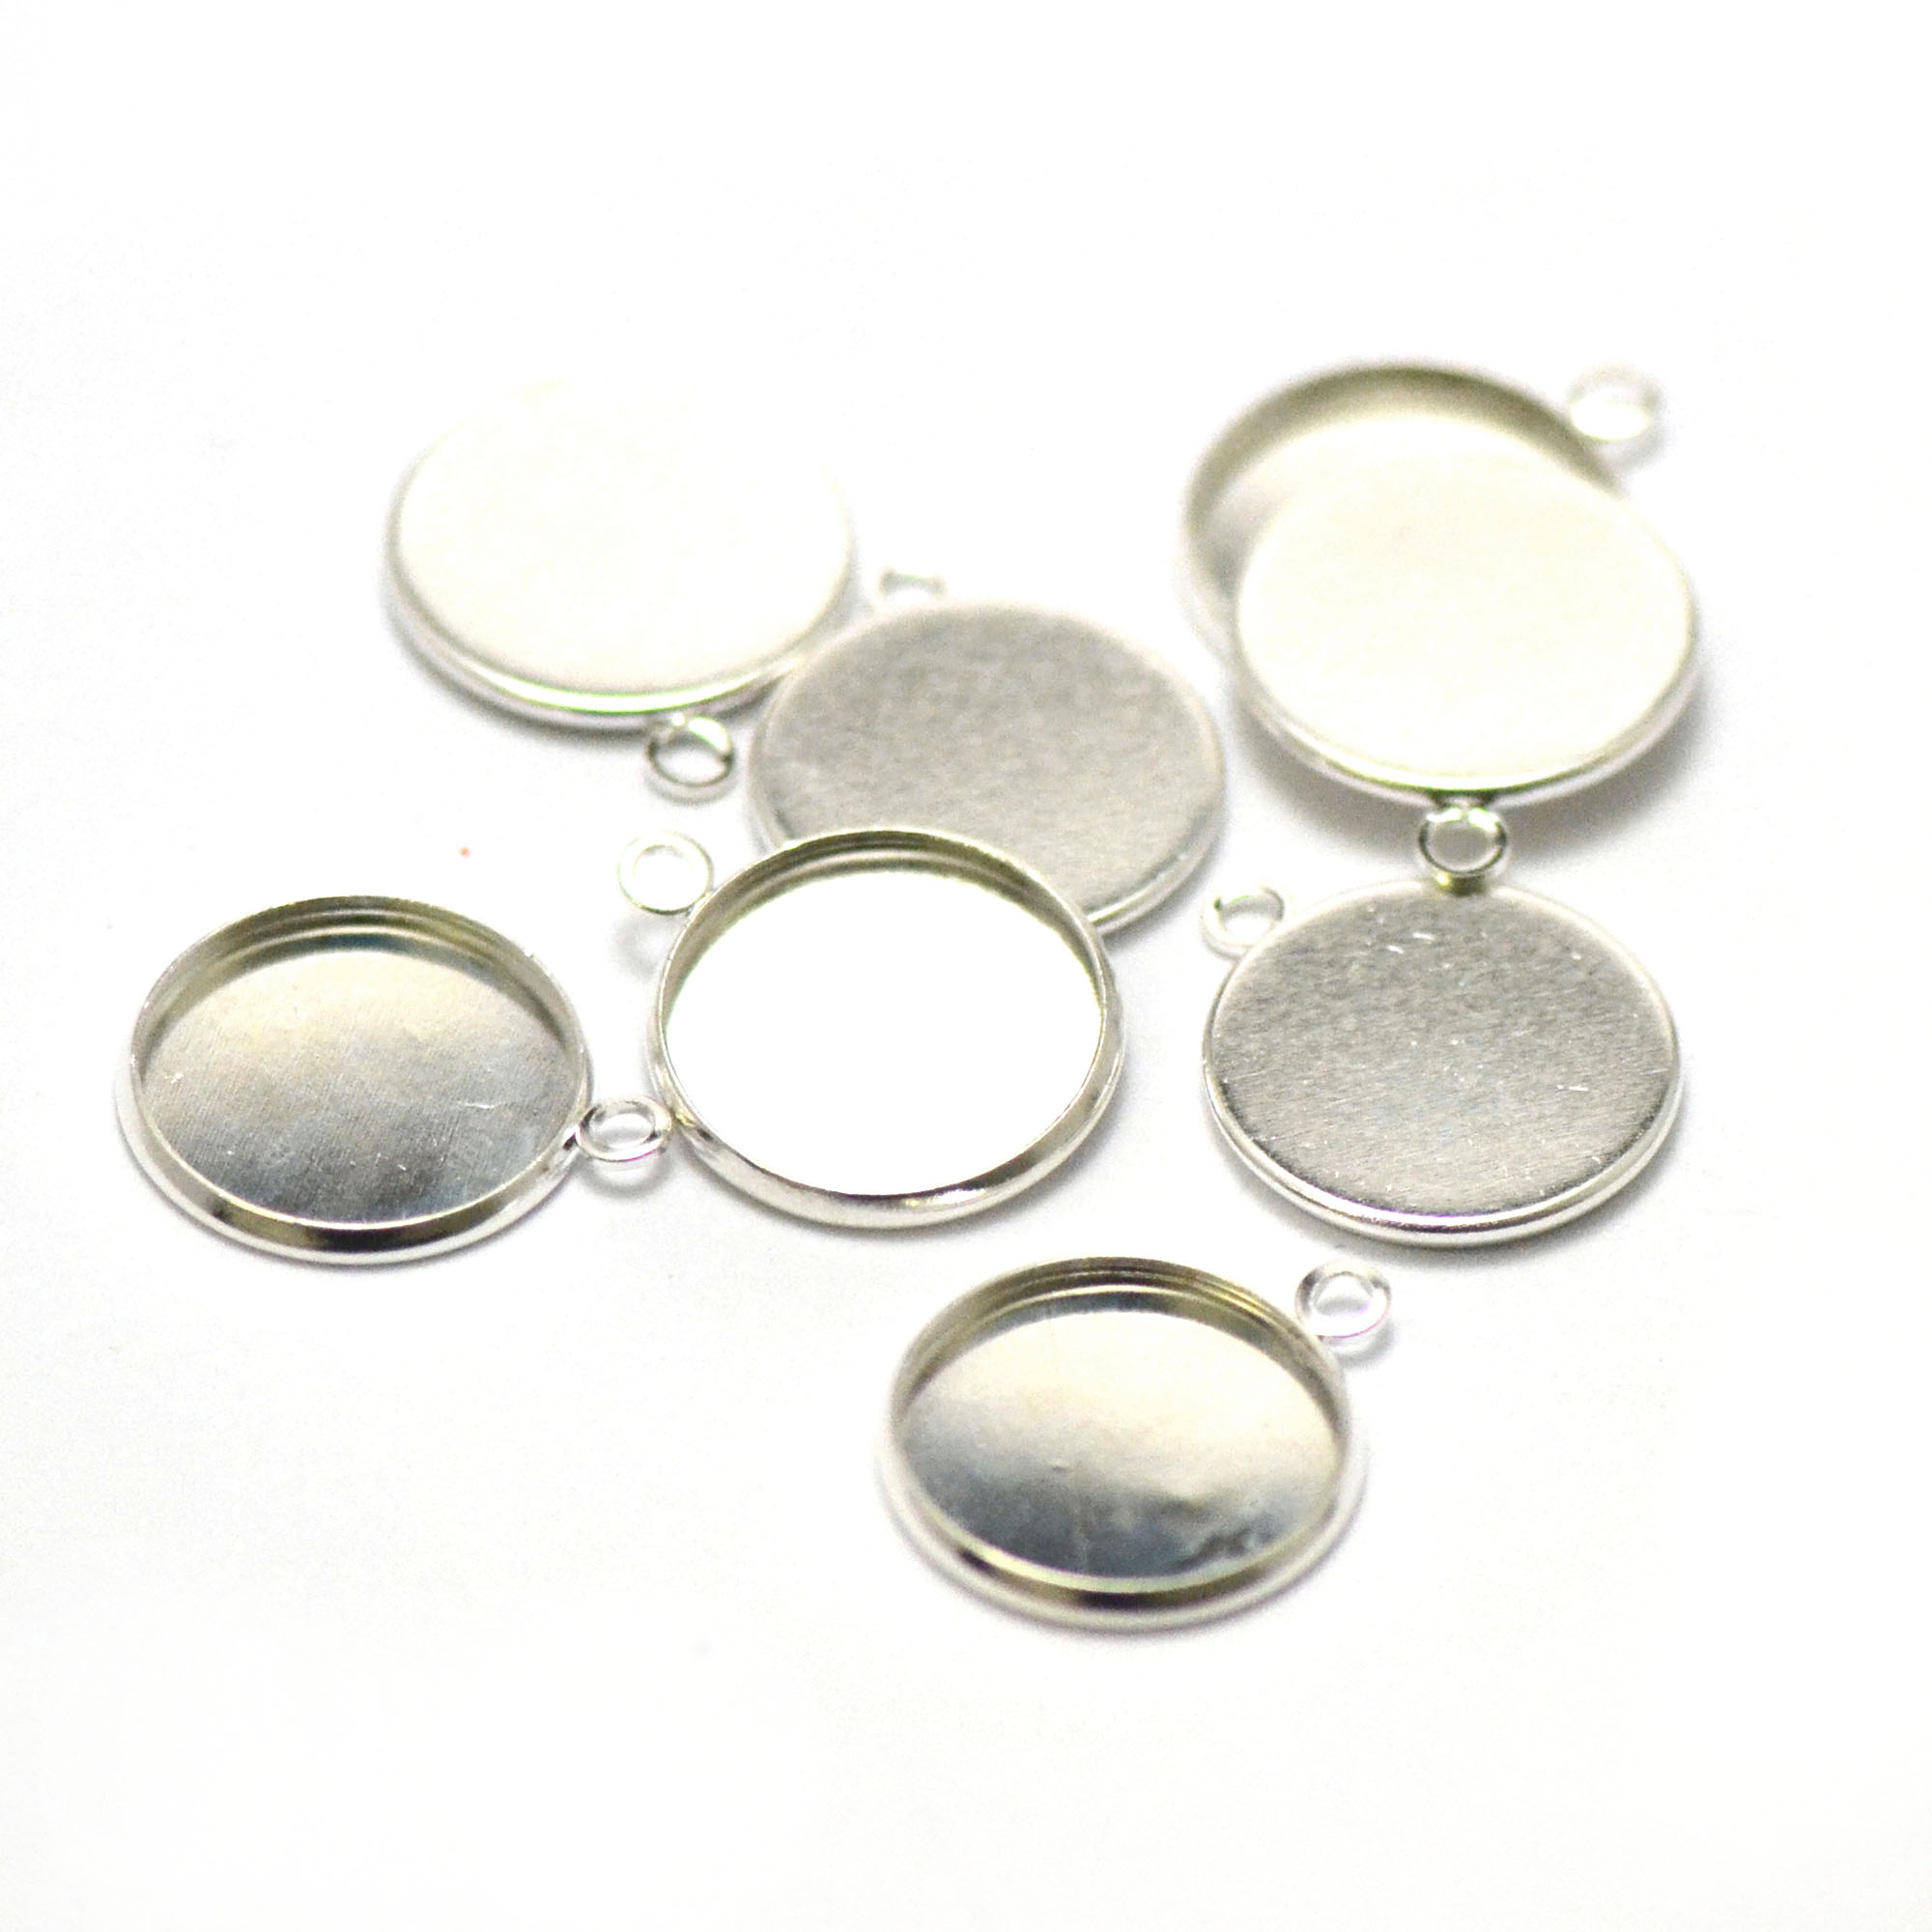 10 supports cabochon pendentif ronde 16 mm, argenté clair